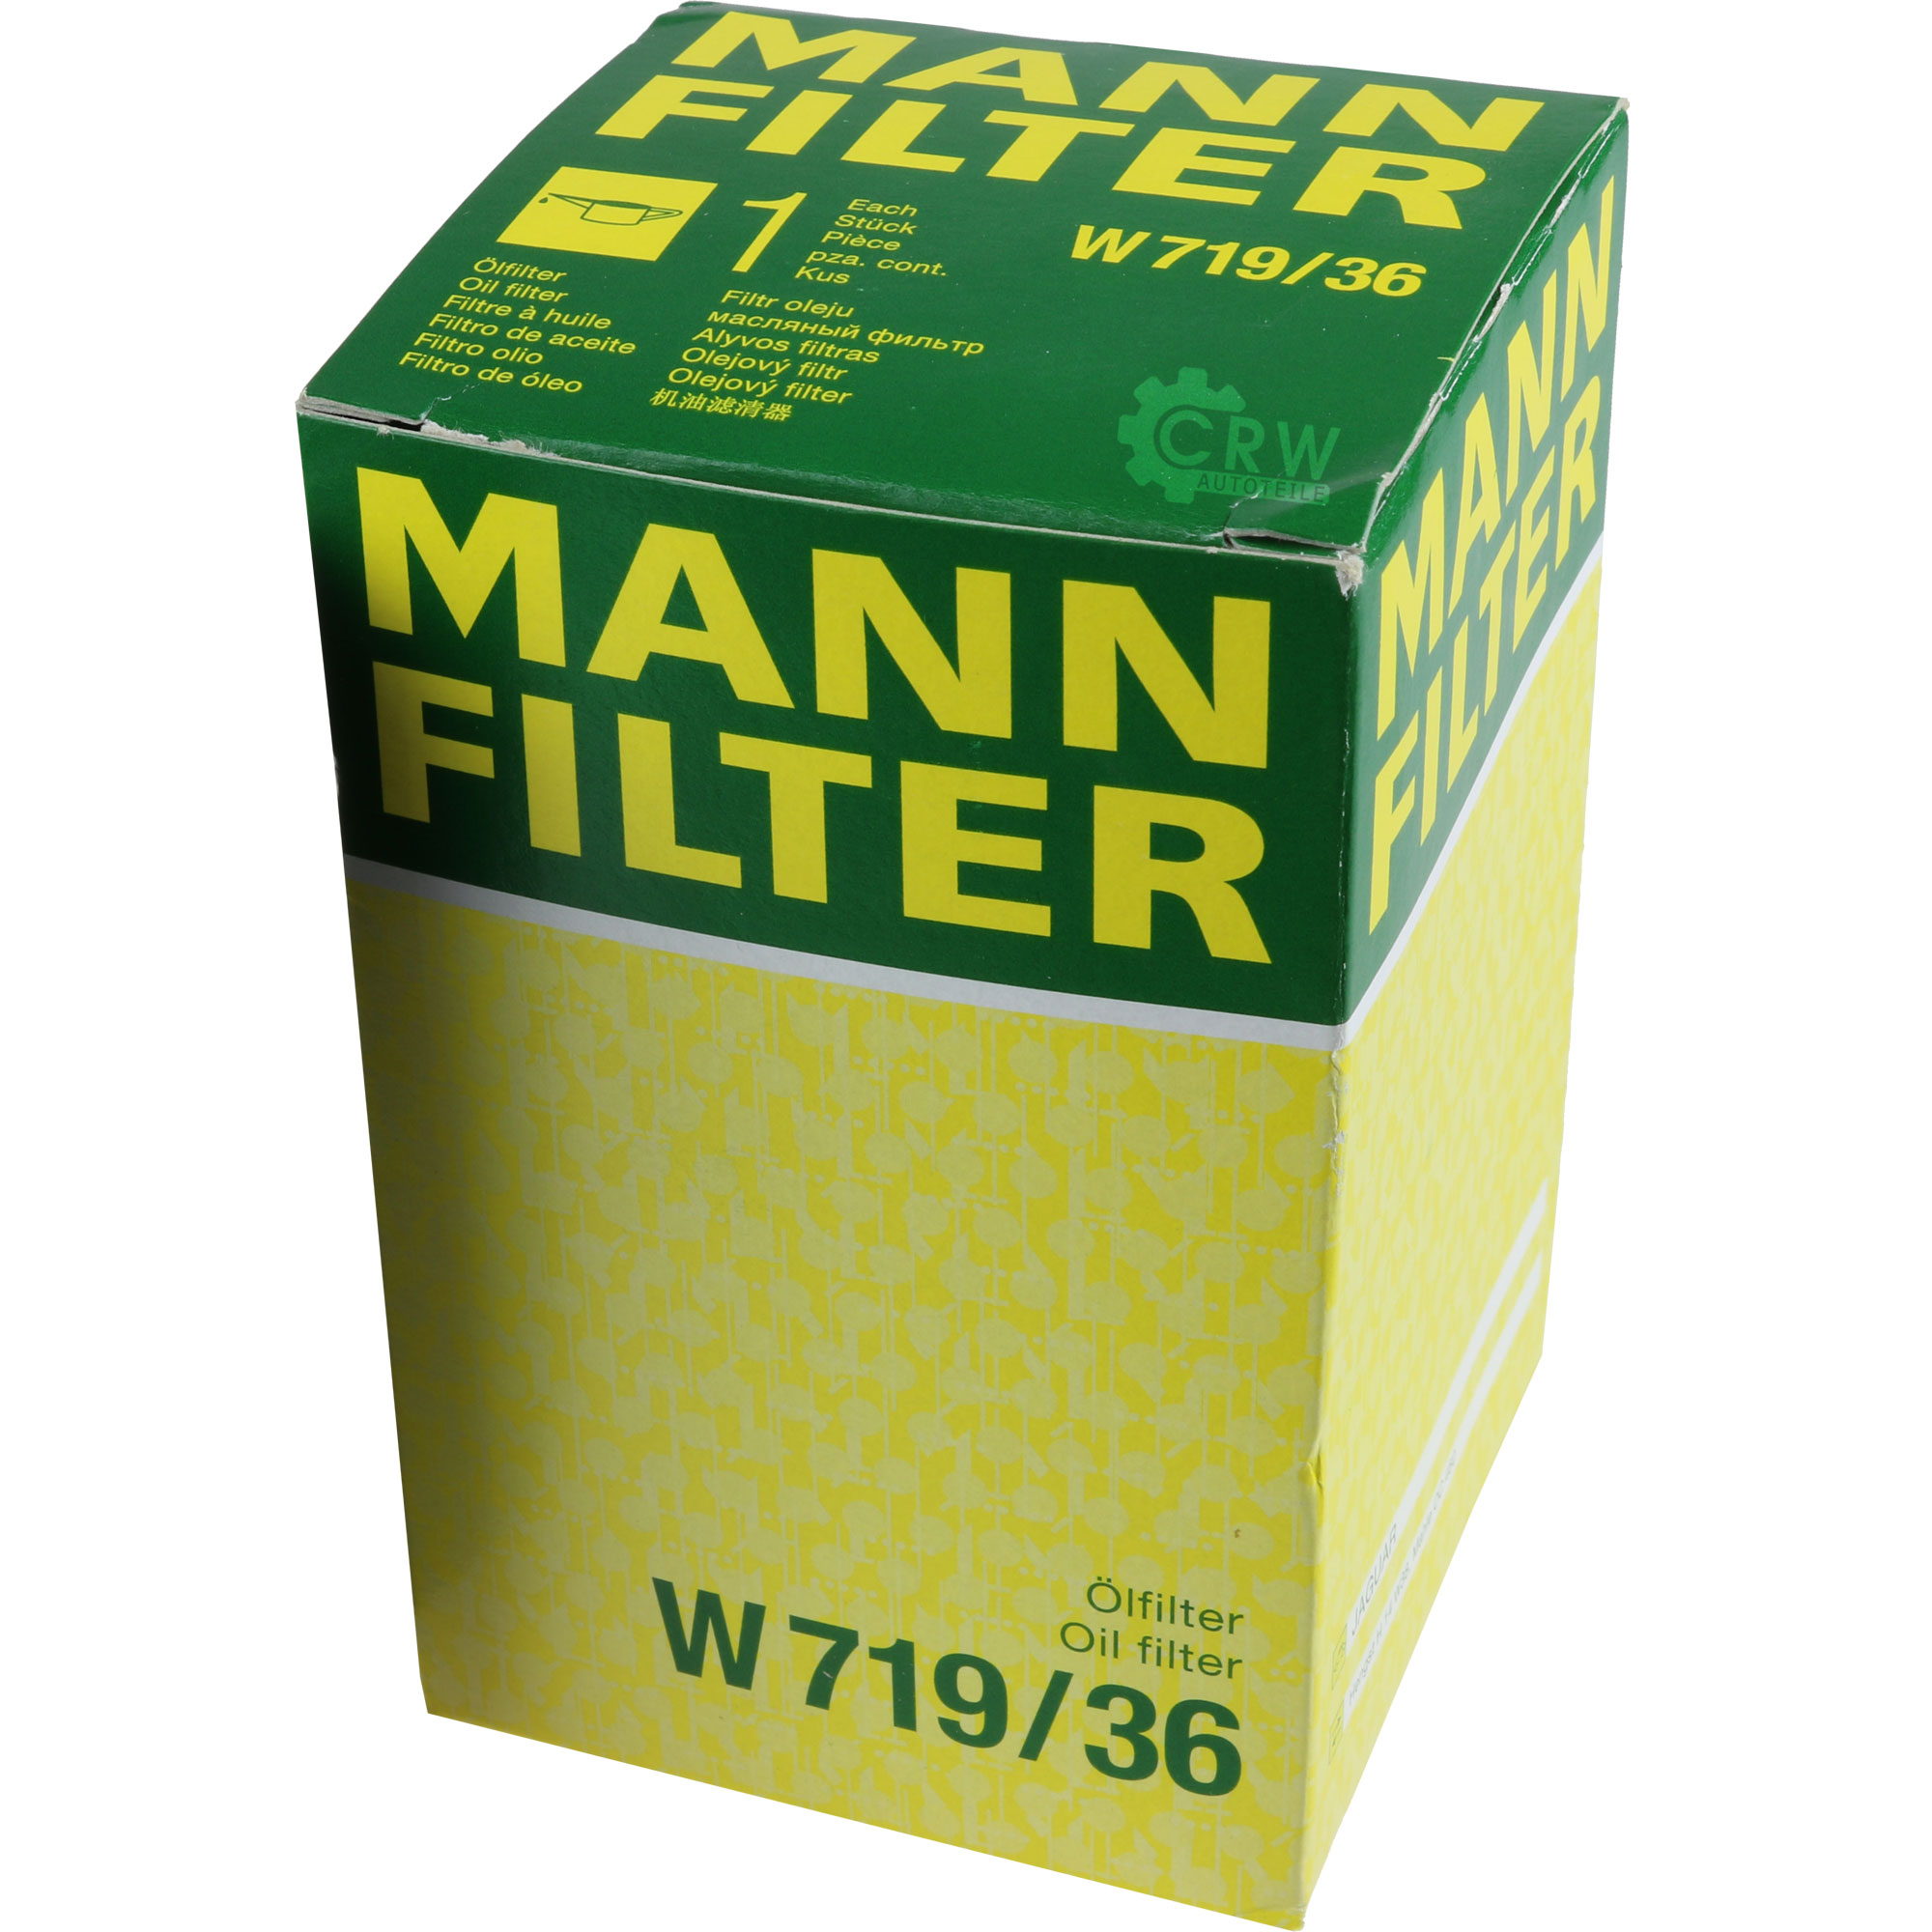 MANN-FILTER Ölfilter W 719/36 Oil Filter